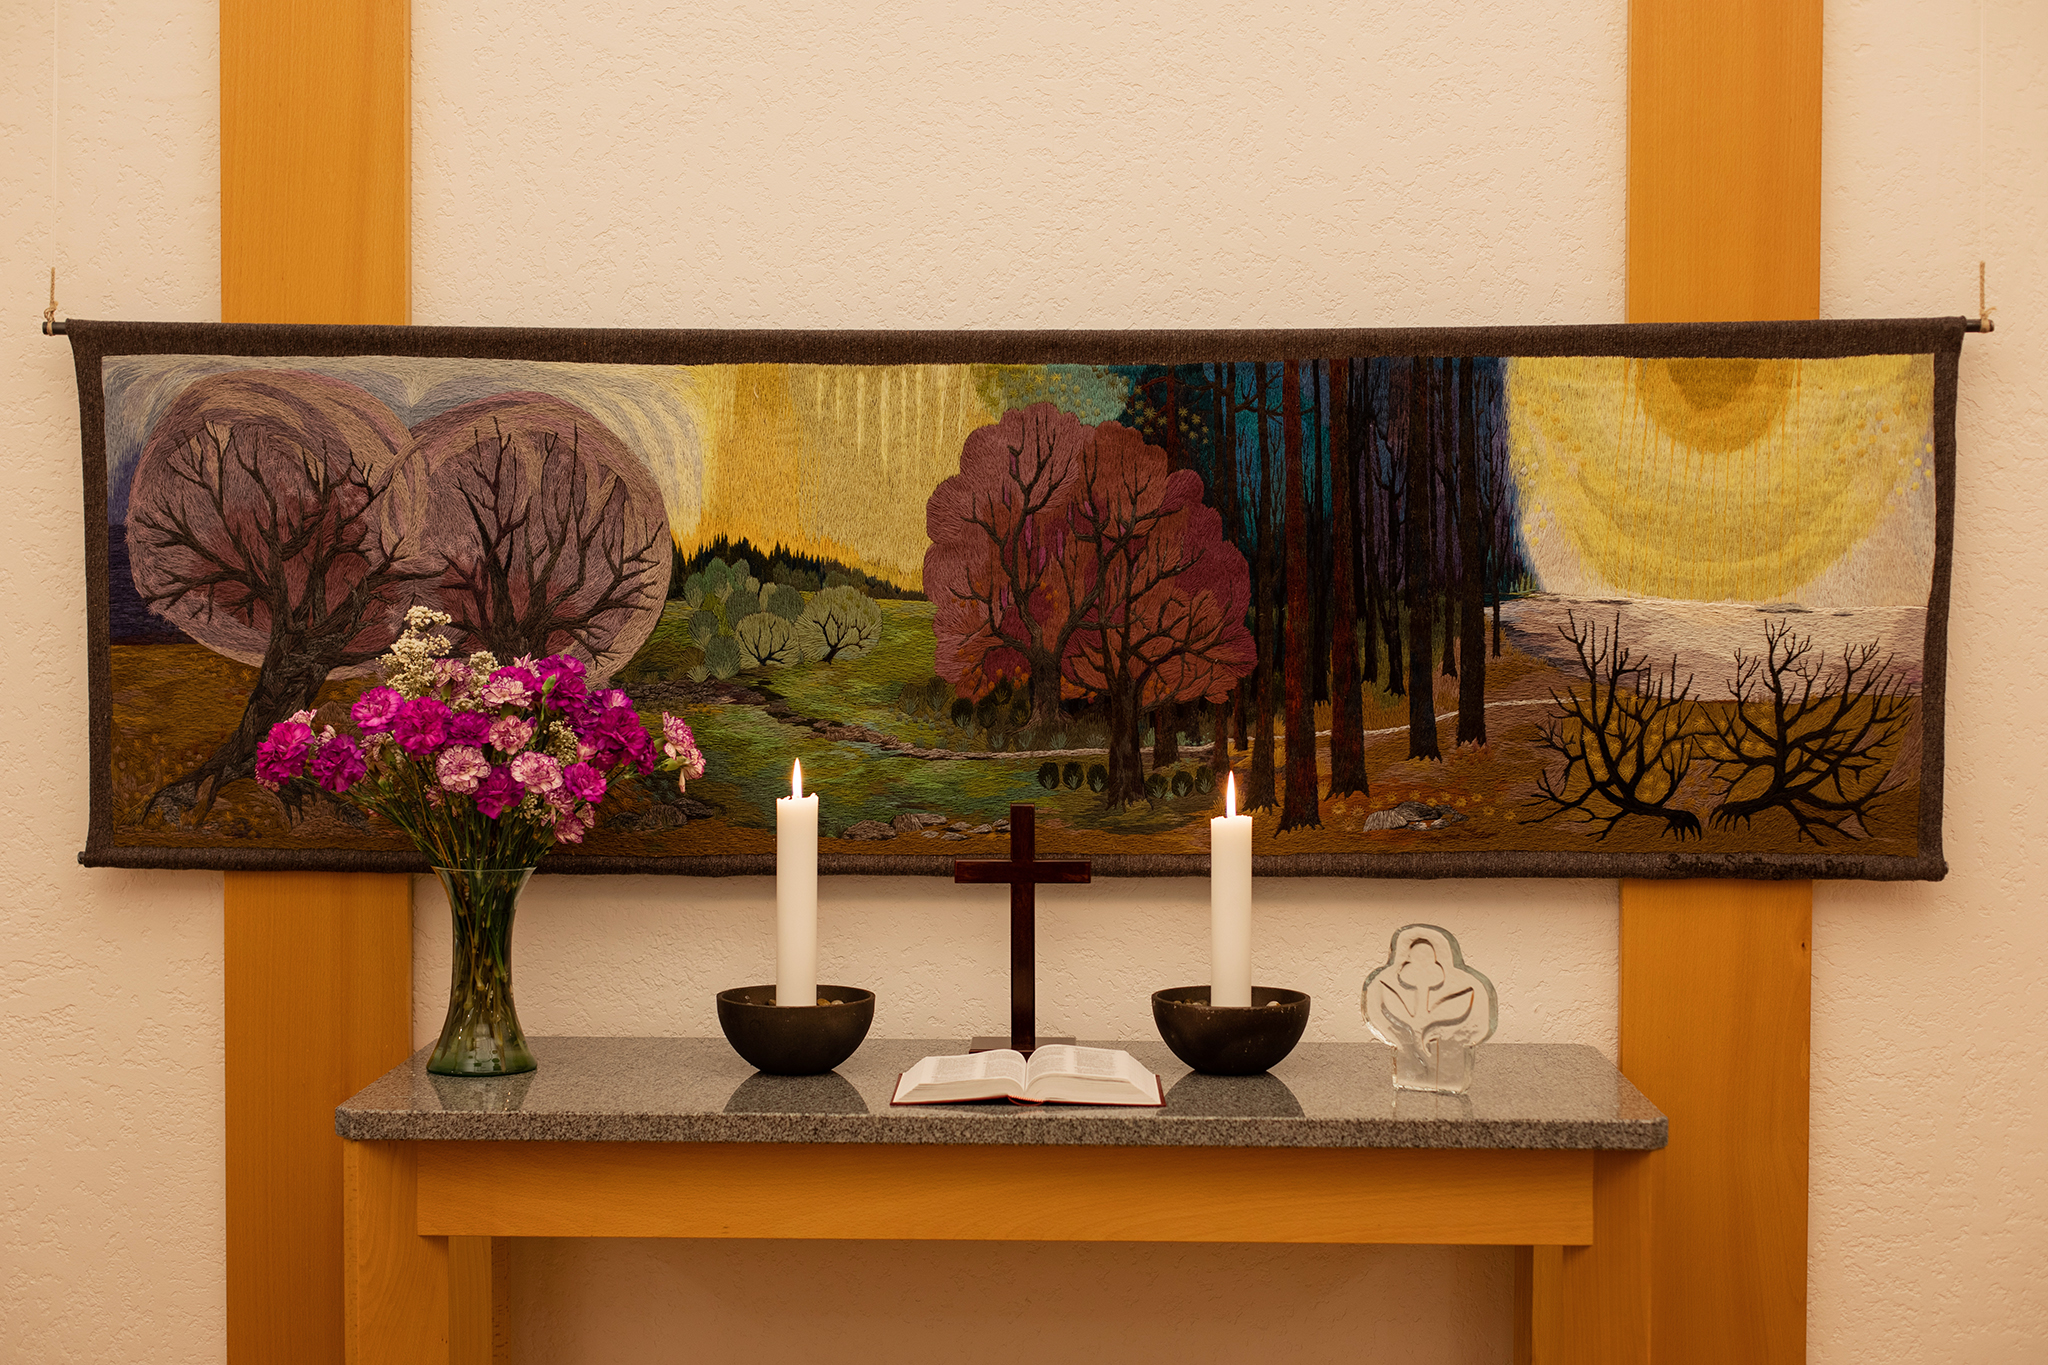 Ett altare med två ljus och en bukett blommor. Bakom altaret en altartavla.